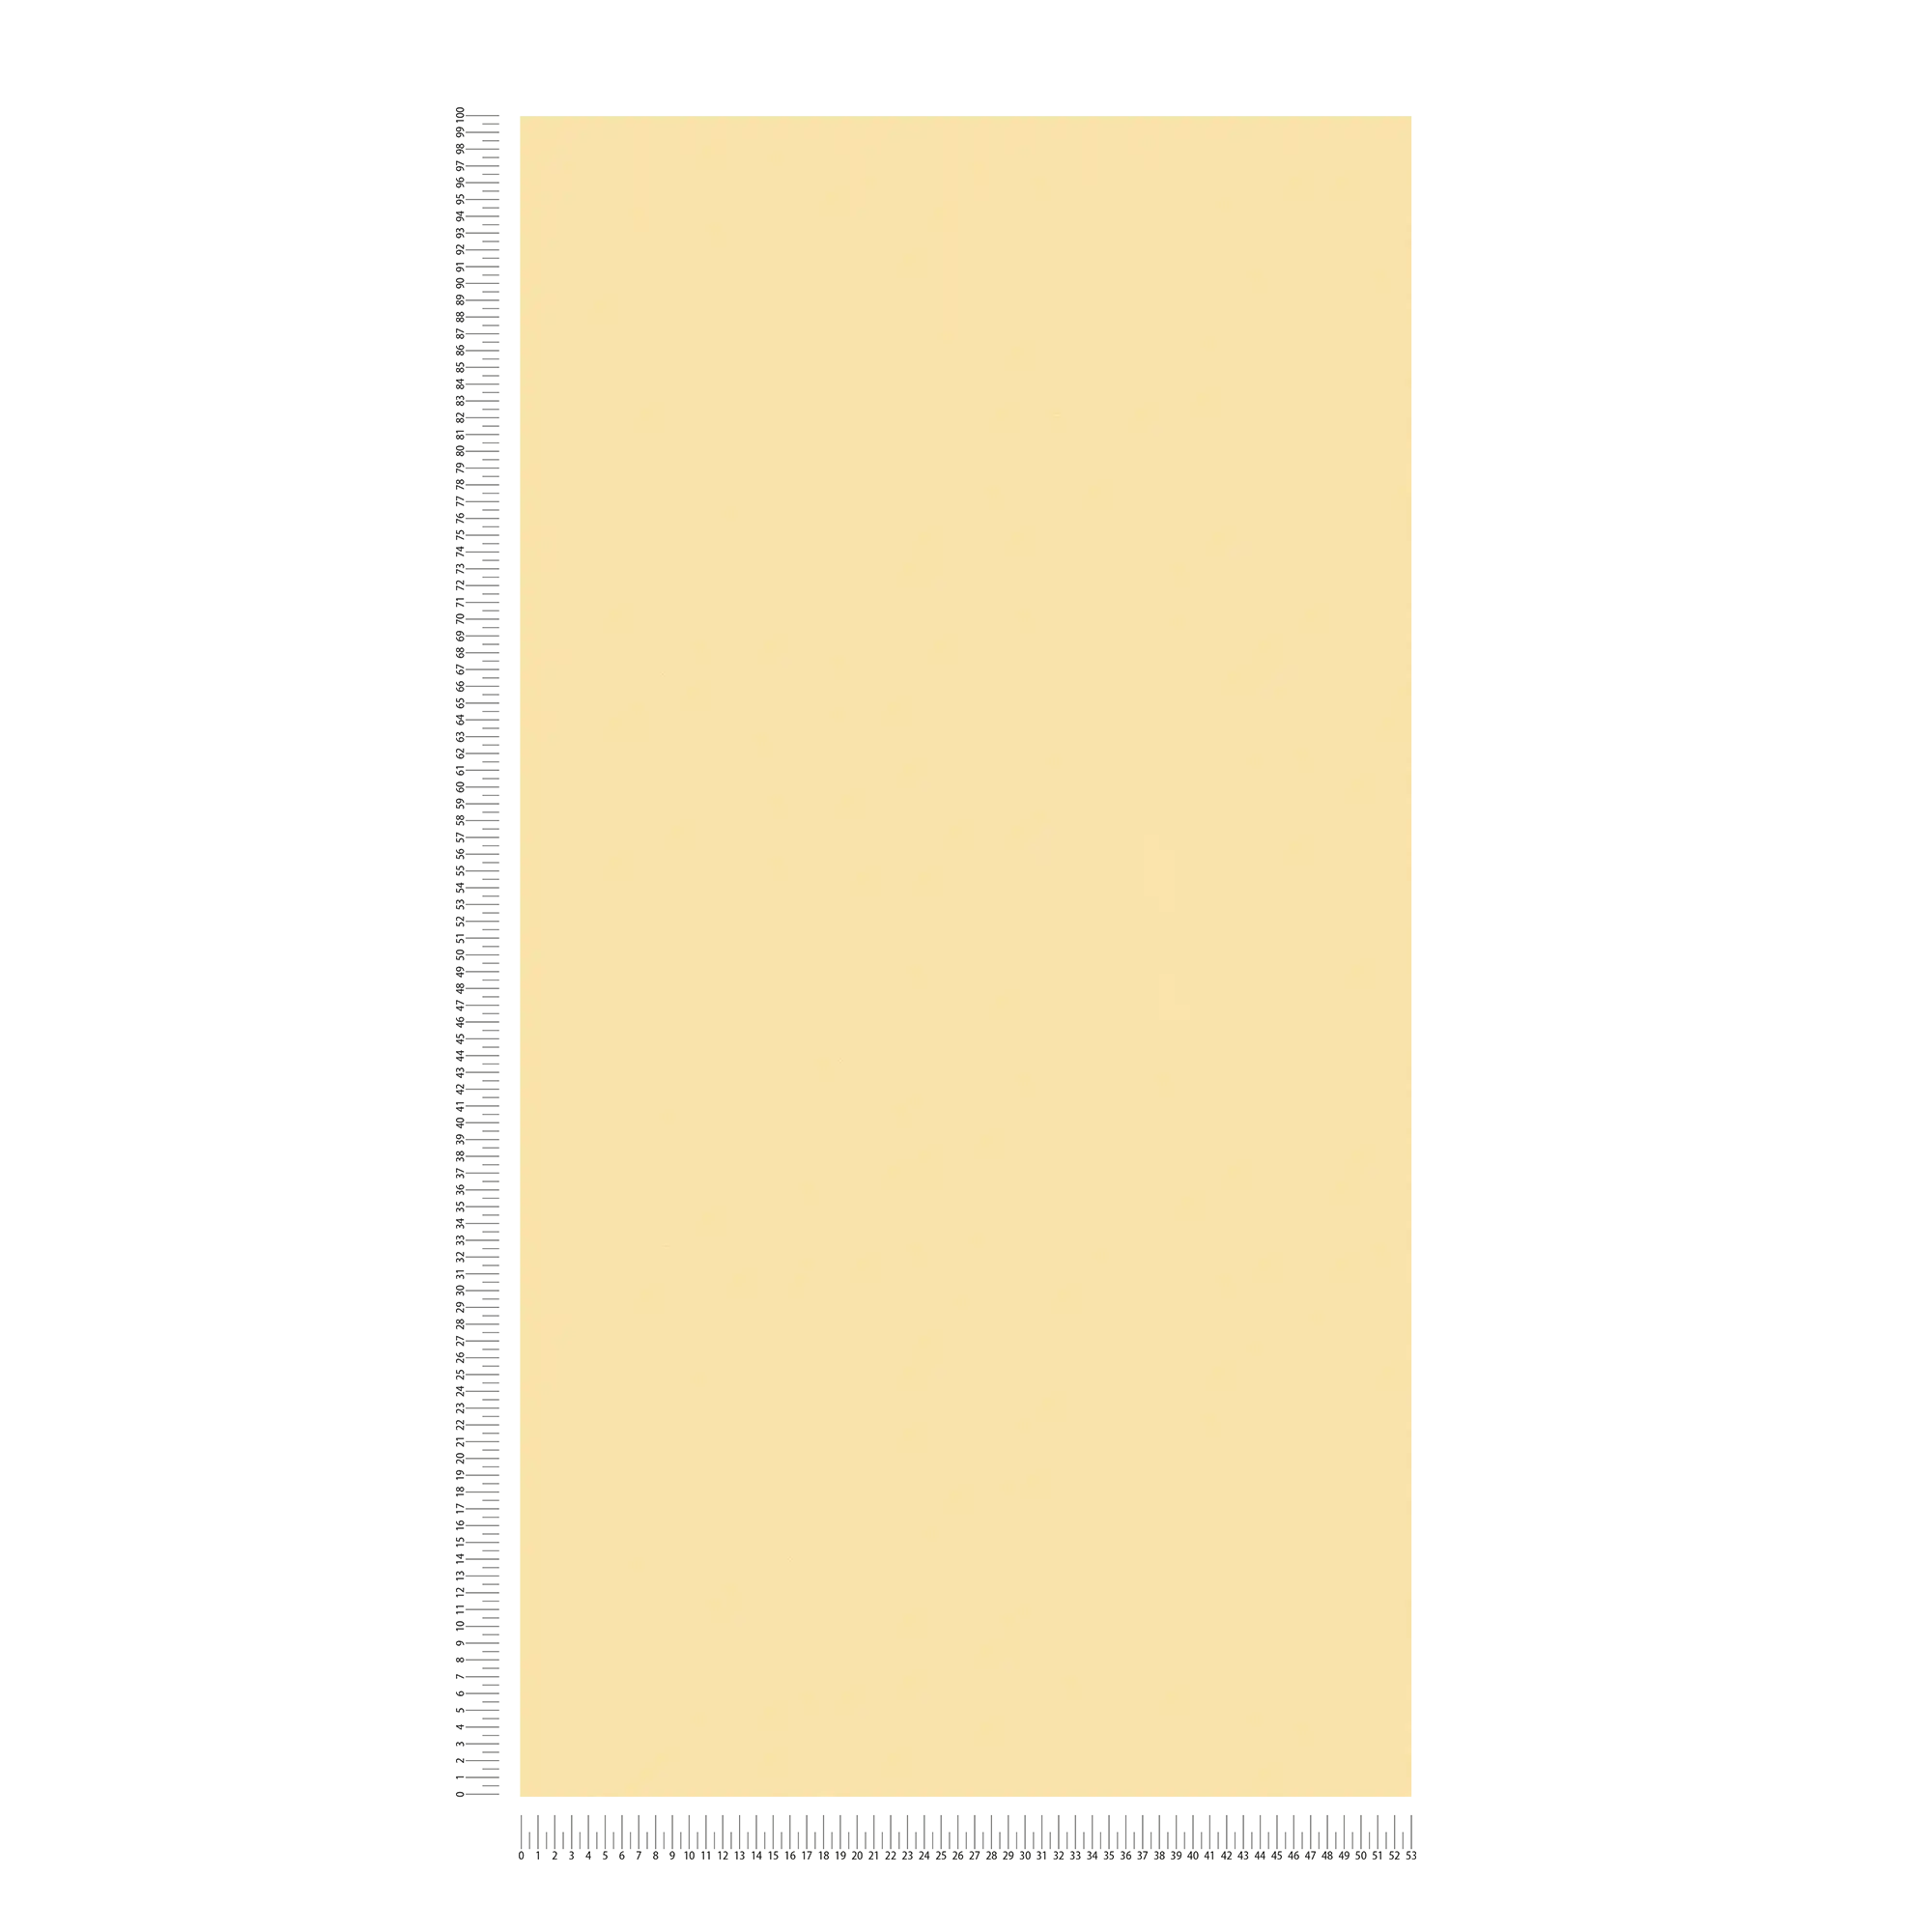             Carta da parati giallo ocra tinta unita con struttura in rilievo
        